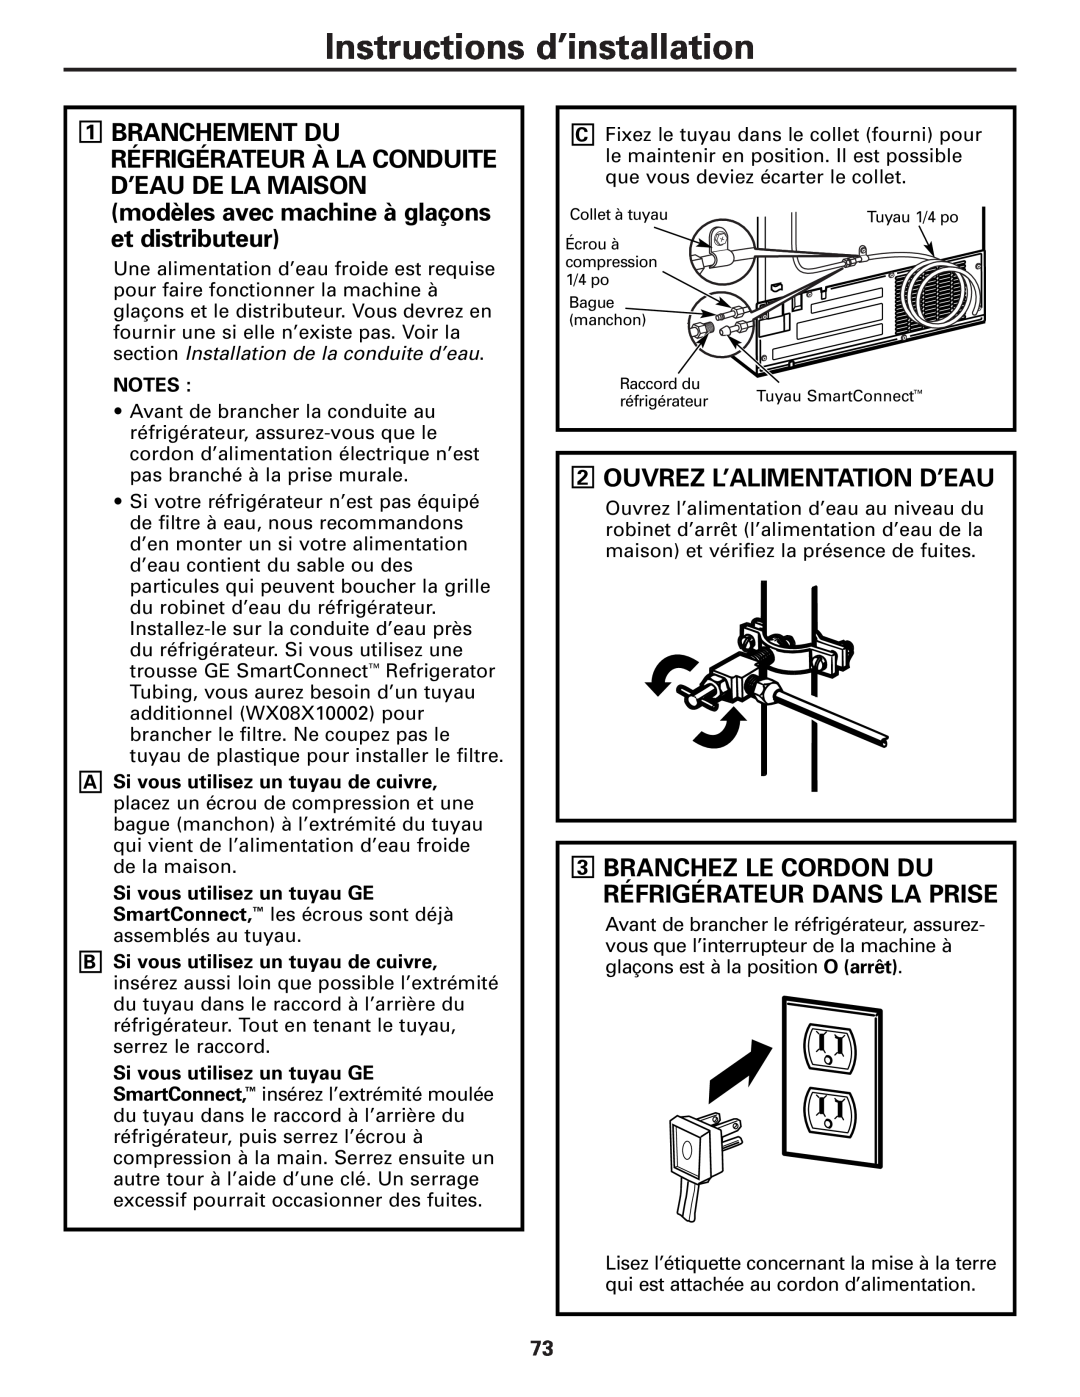 GE 200D8074P009, 49-60456 manual Ouvrez L’Alimentation D’Eau, Branchez Le Cordon Du Réfrigérateur Dans La Prise 